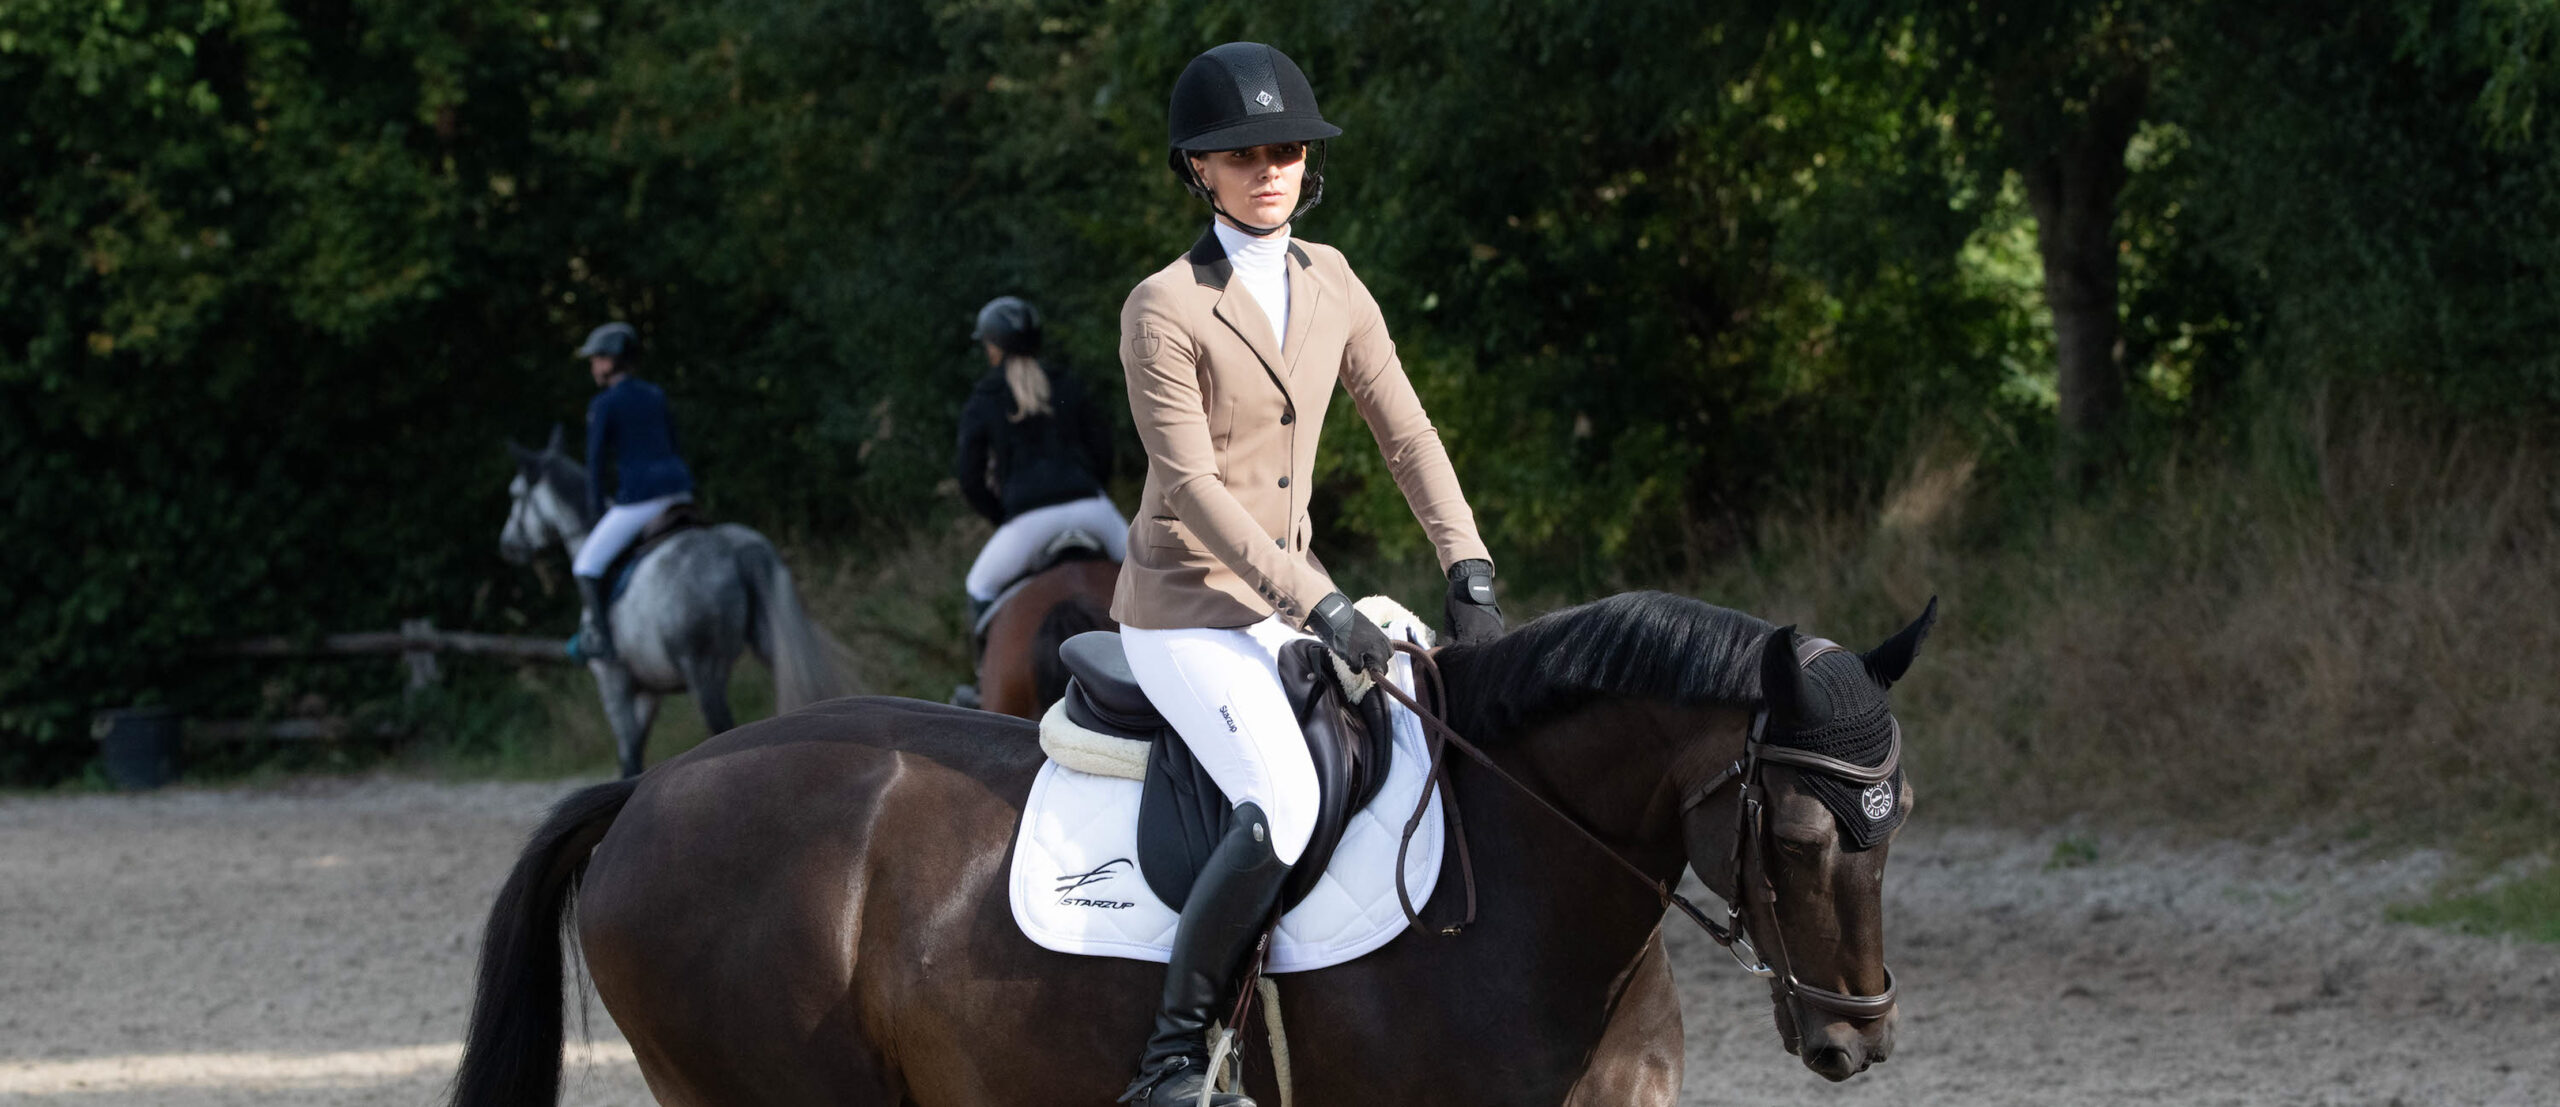 Starzup  Pantalon d'équitation élégant, durable et innovant pour femme